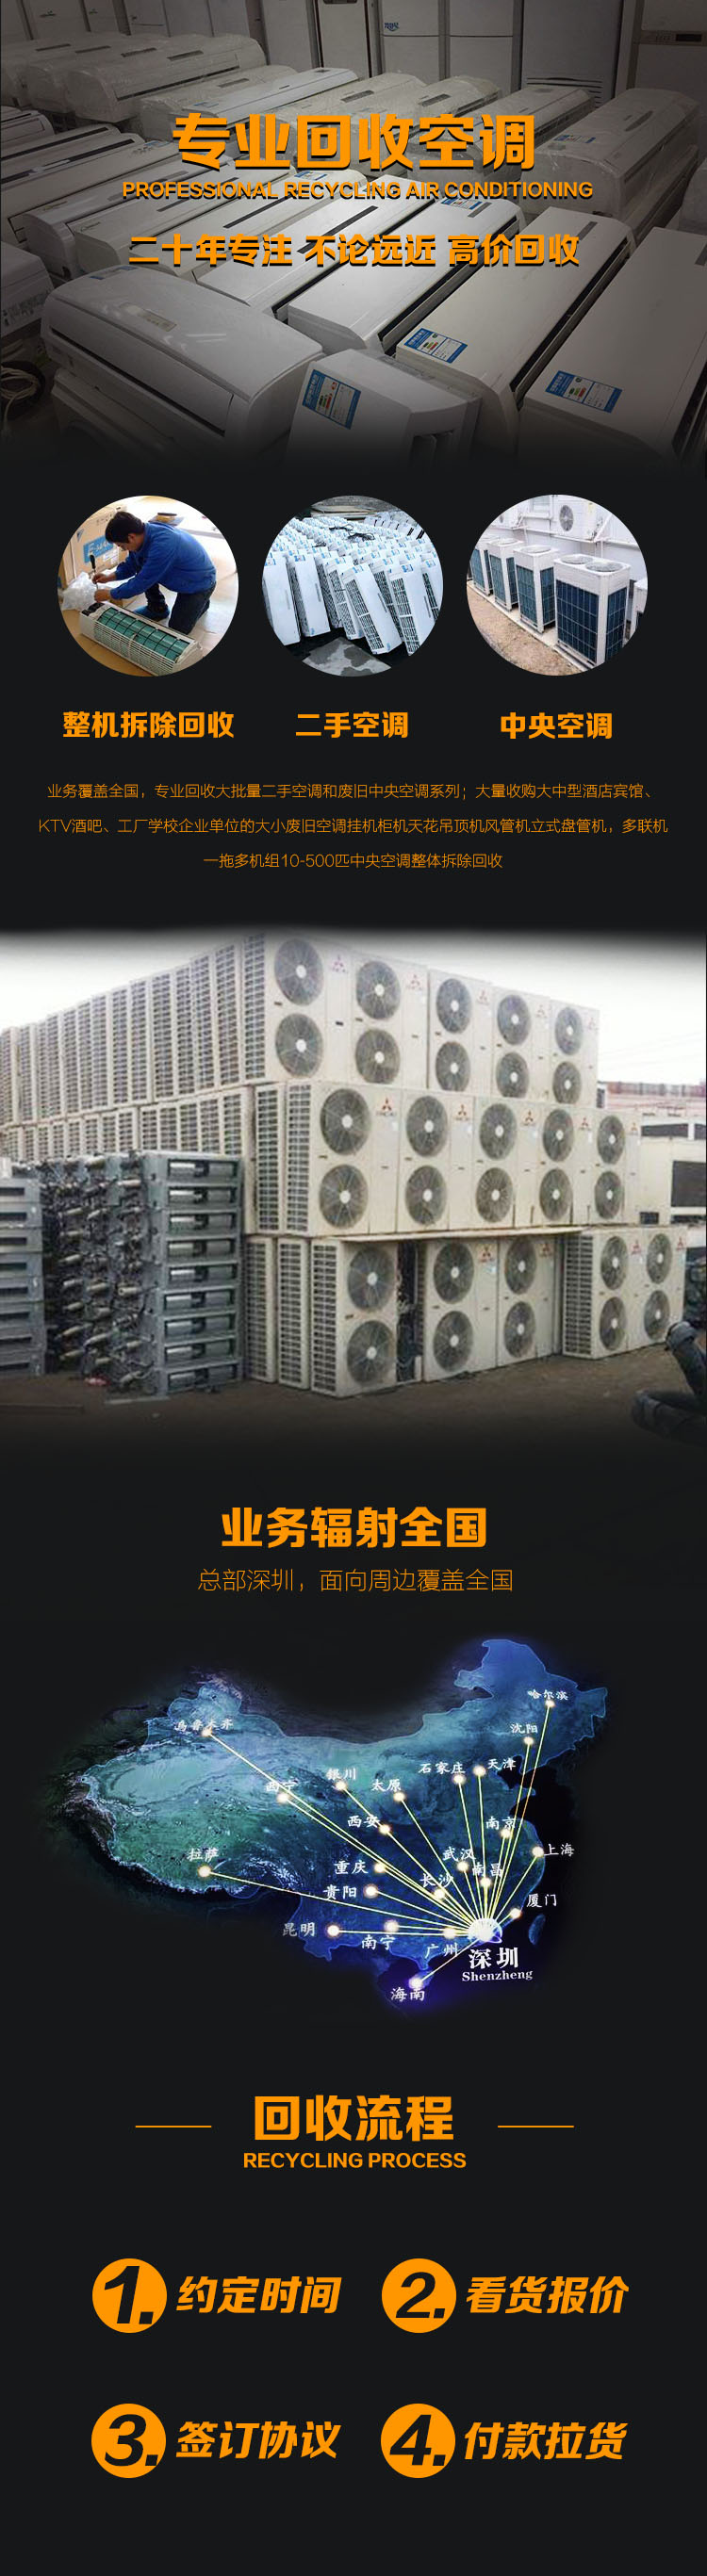 深圳回收二手空调的市场电话